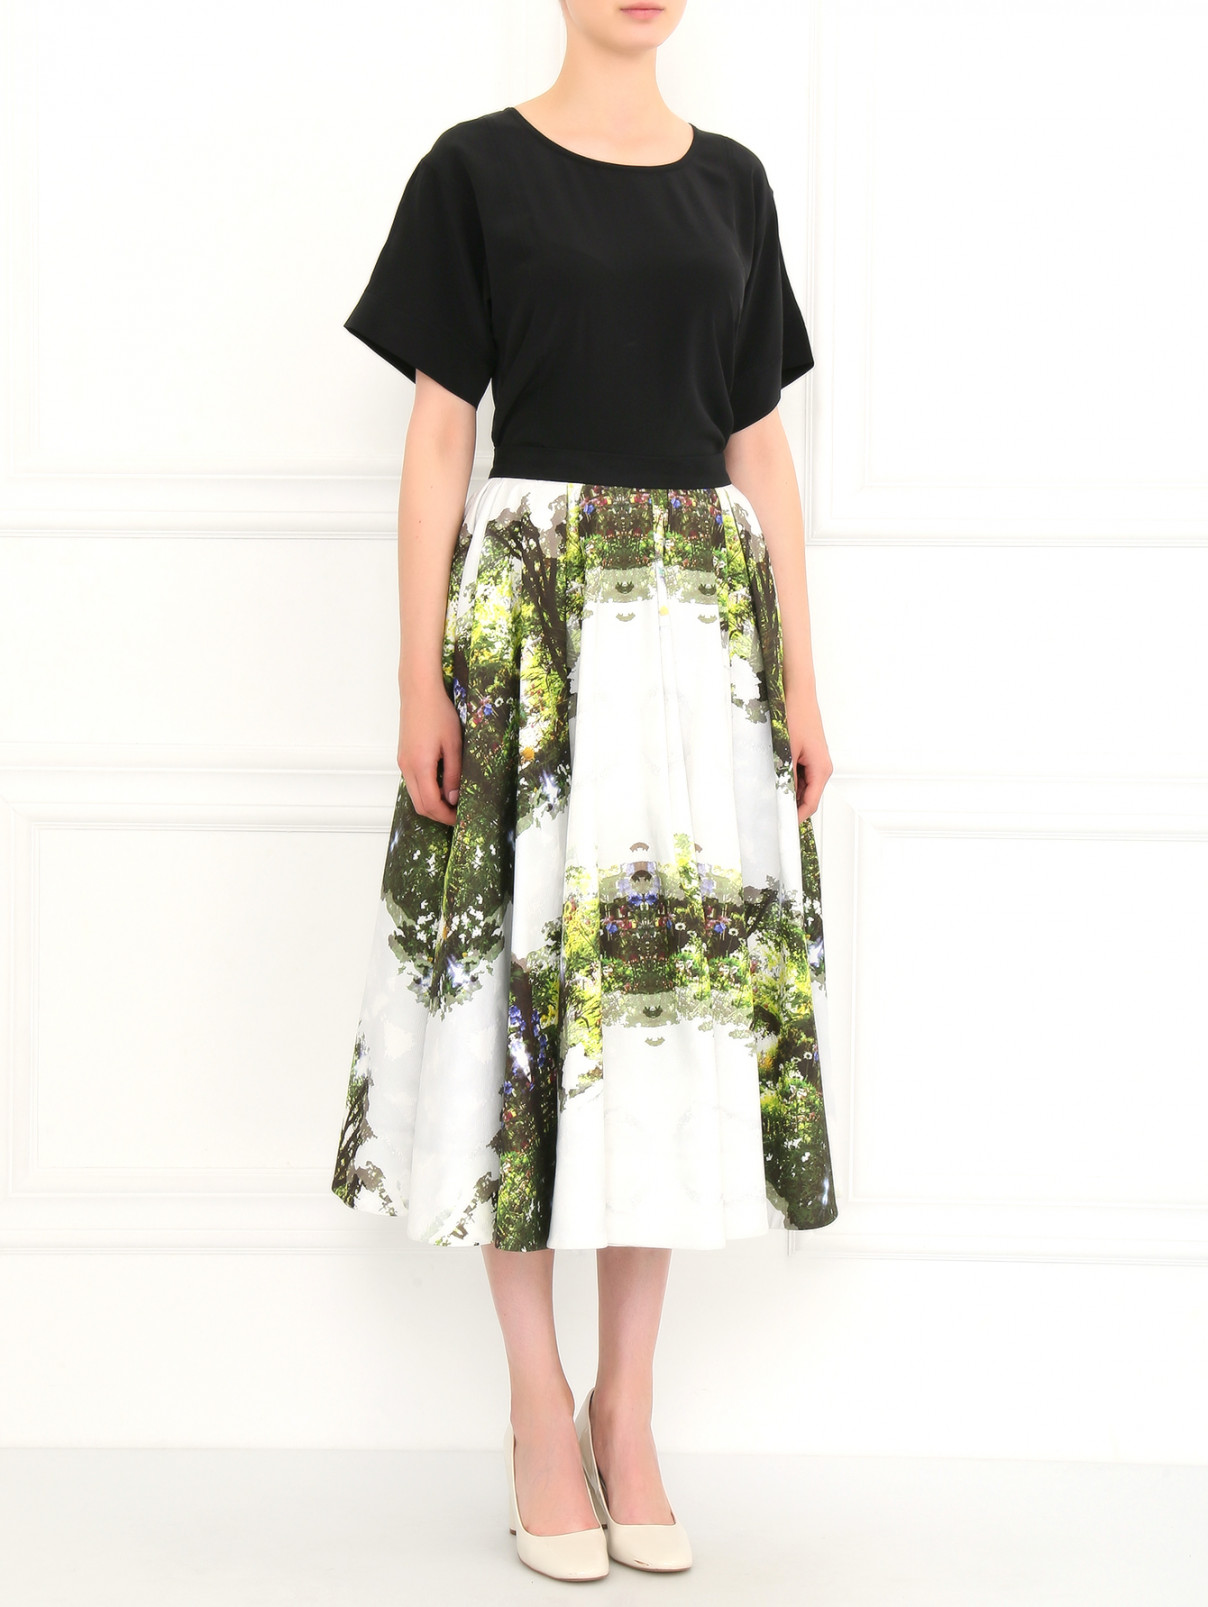 Пышная юбка-макси из хлопка Kira Plastinina  –  Модель Общий вид  – Цвет:  Узор